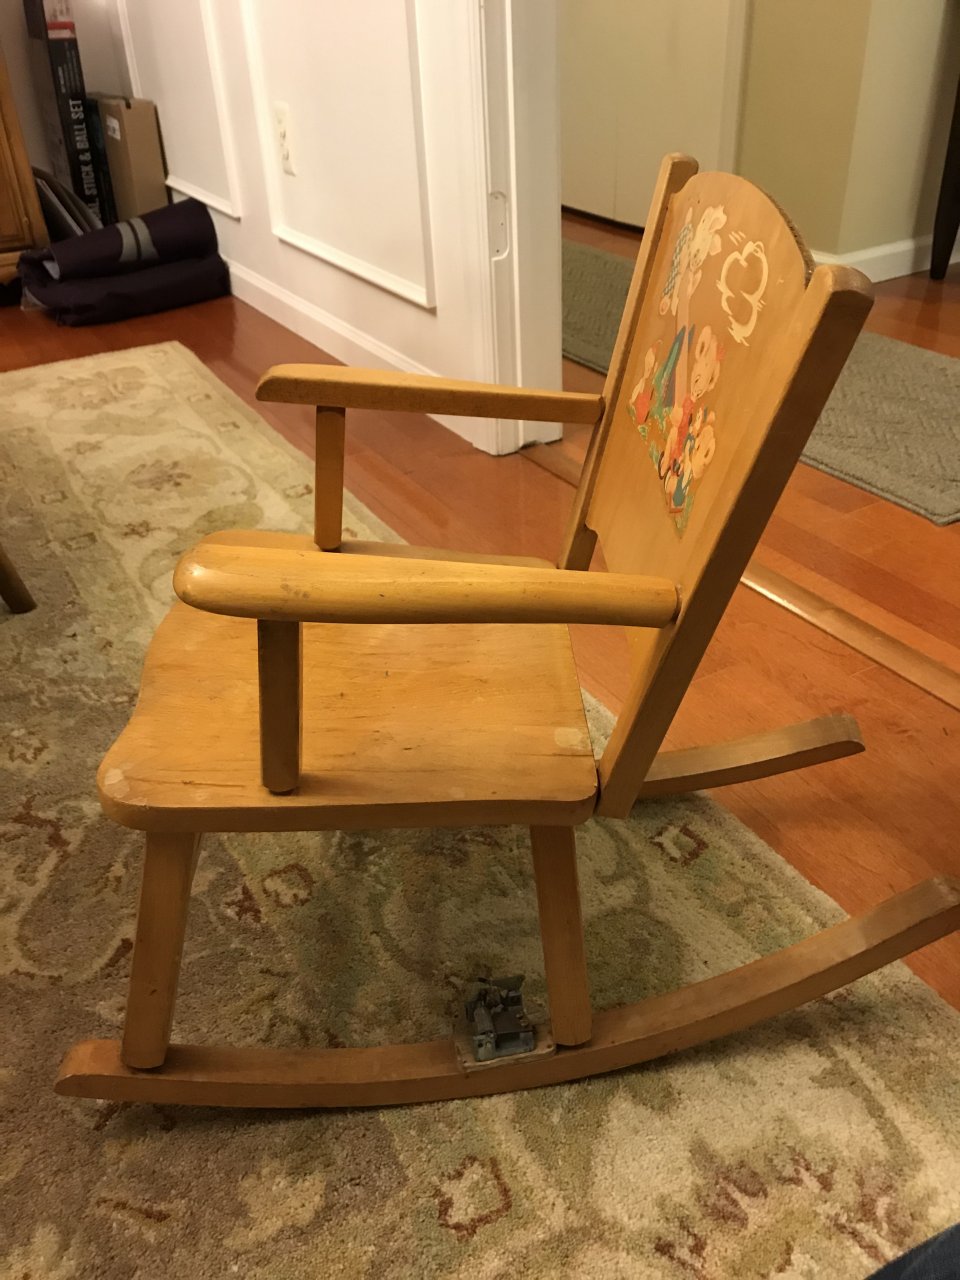 Wooden Chair Repair Shop